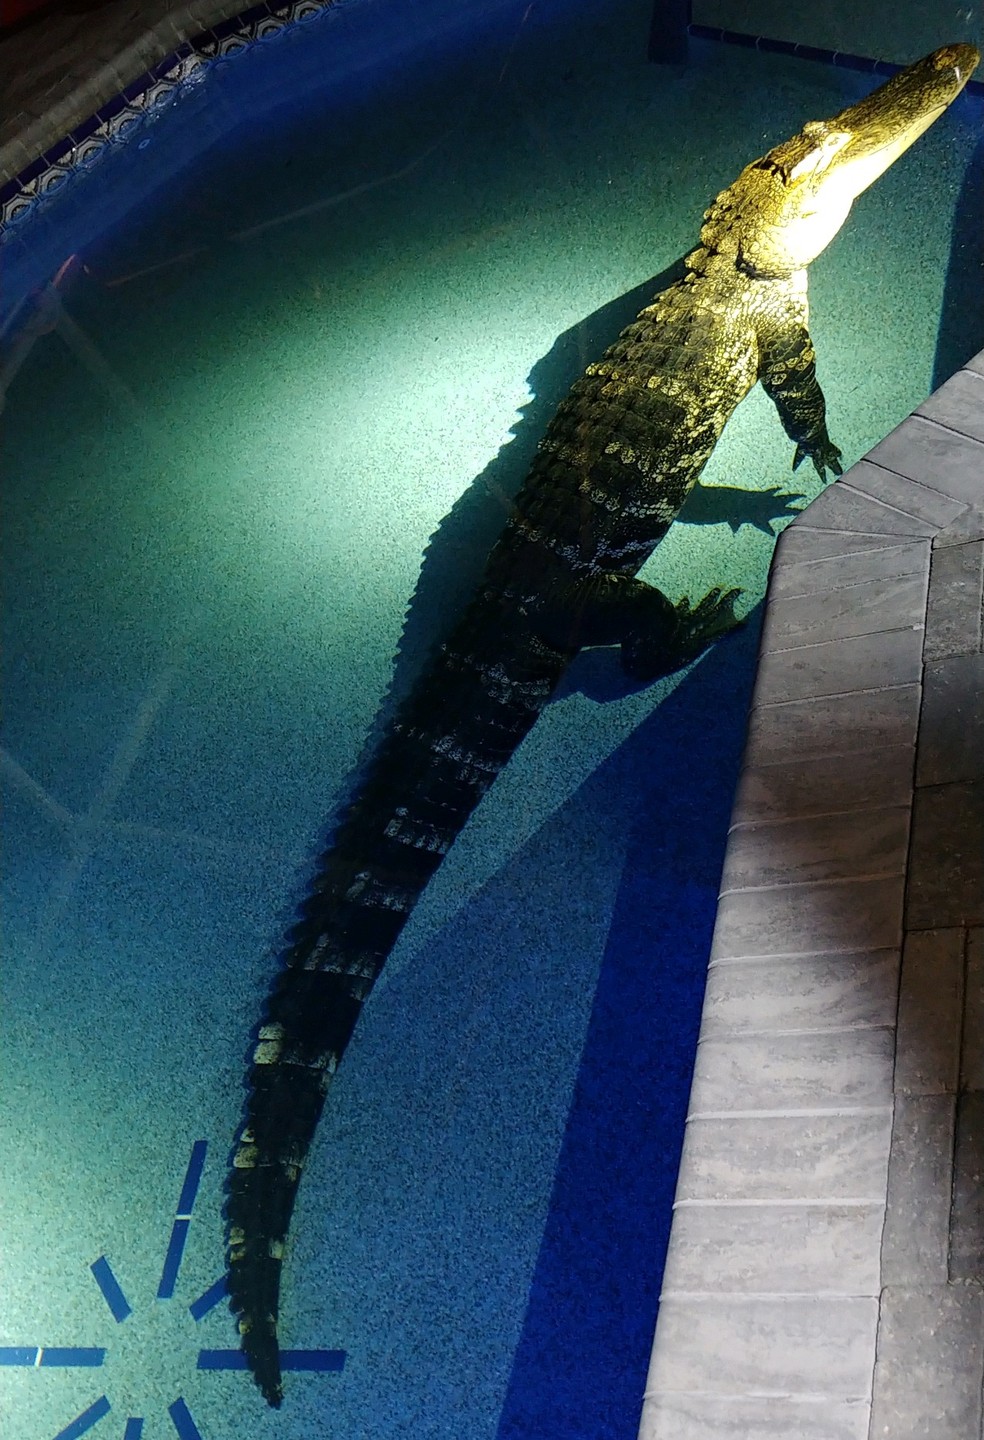 Família escuta barulho e encontra crocodilo de 3 metros em piscina nos Estados Unidos — Foto: Divulgação/Gabinete do Xerife do Condado de Charlotte